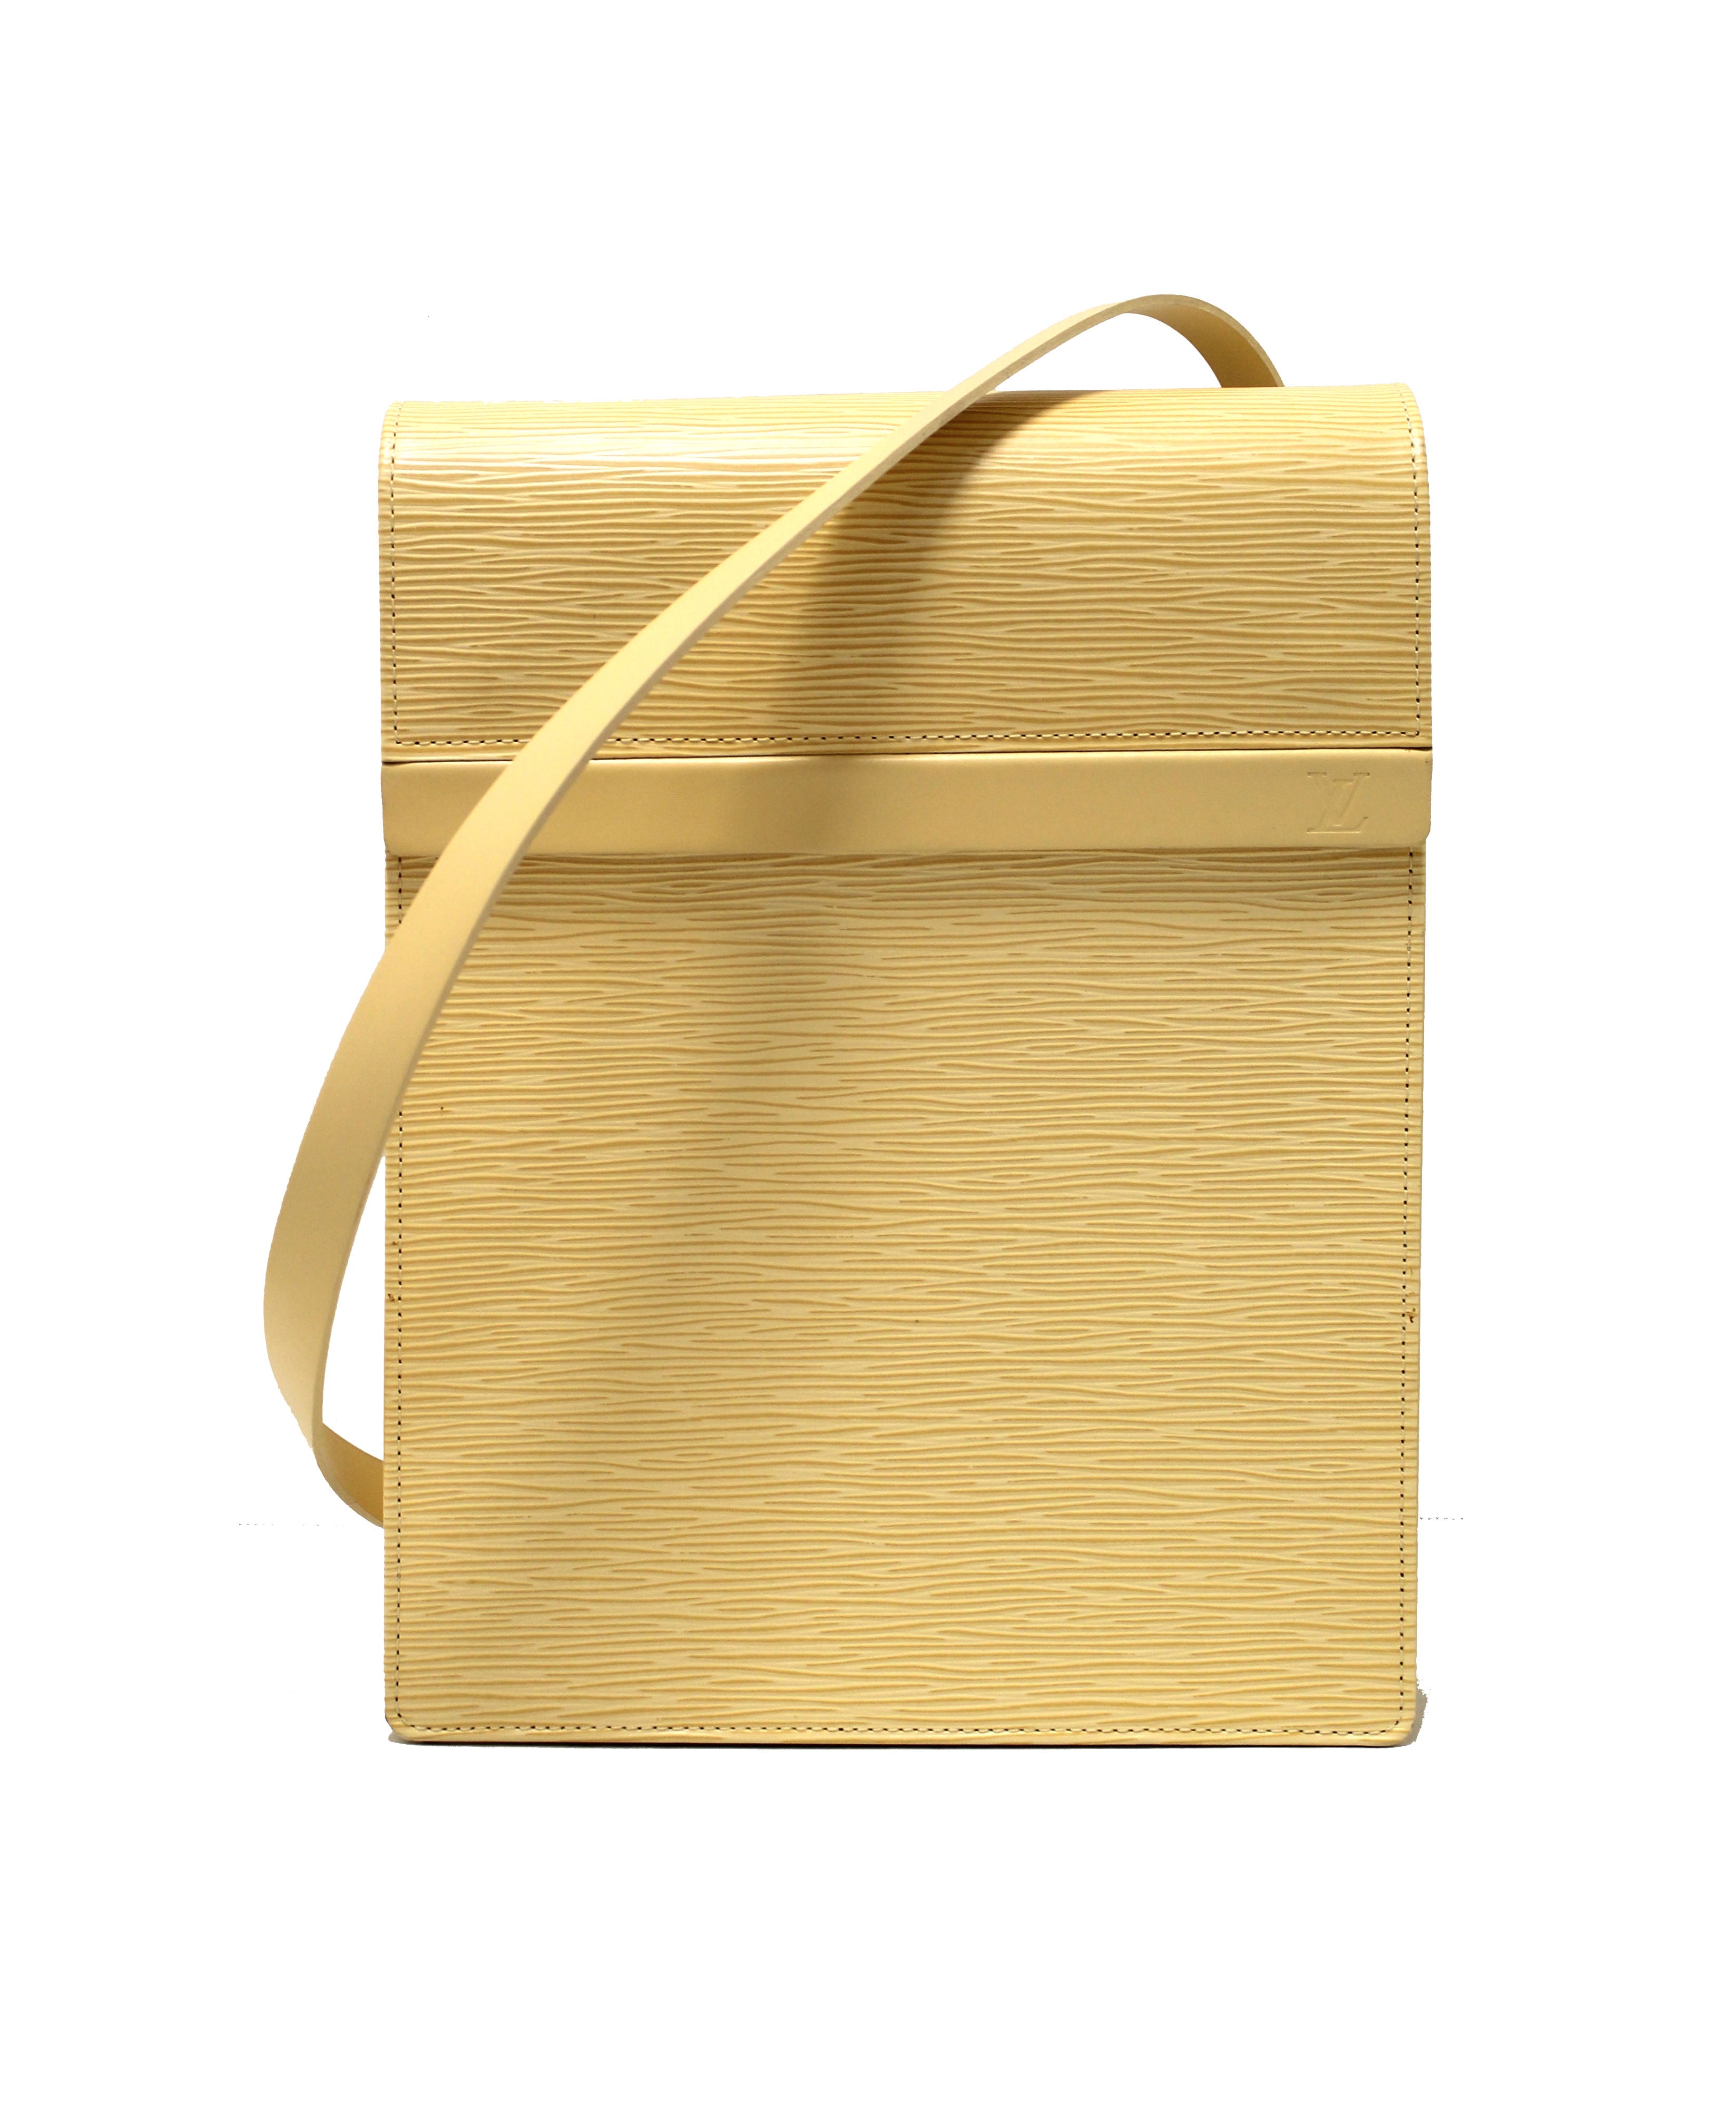 Authentic Louis Vuitton Shopping Bag